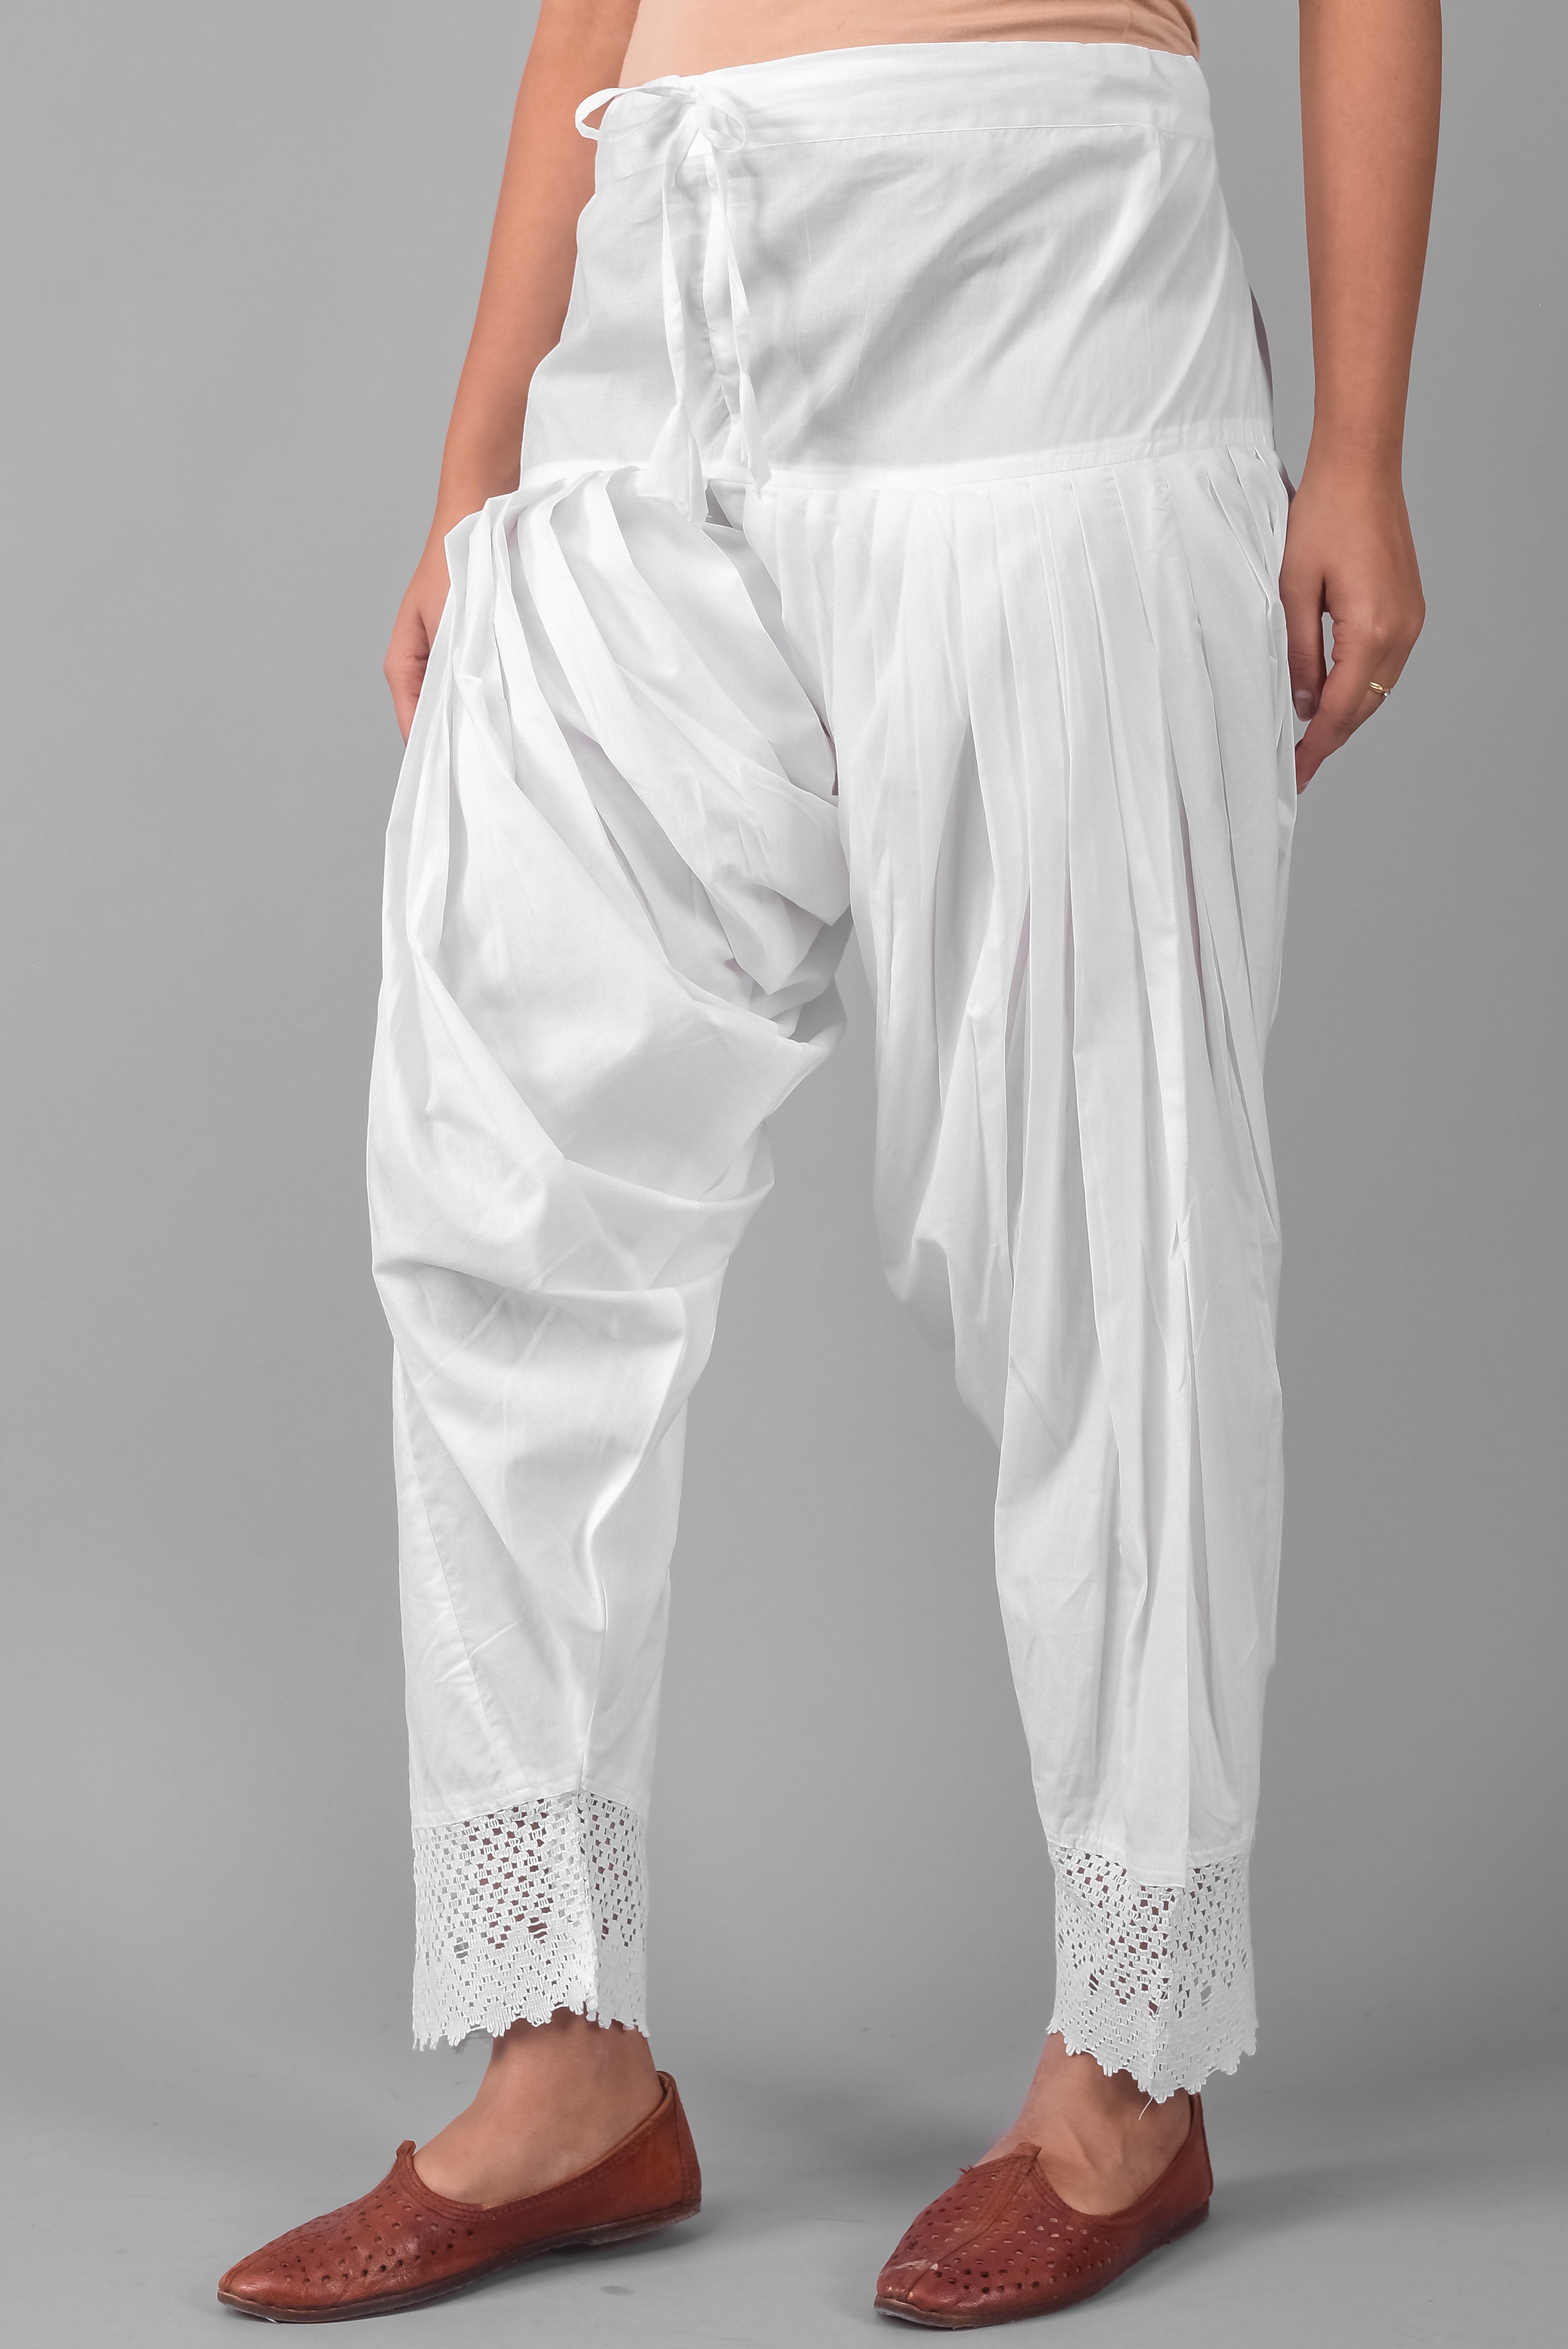 Buy White And Fuchsia Cotton A-Line Kurta Salwar Pant Suit Set (Kurta, Salwar  Pant) for INR1999.50 | Biba India